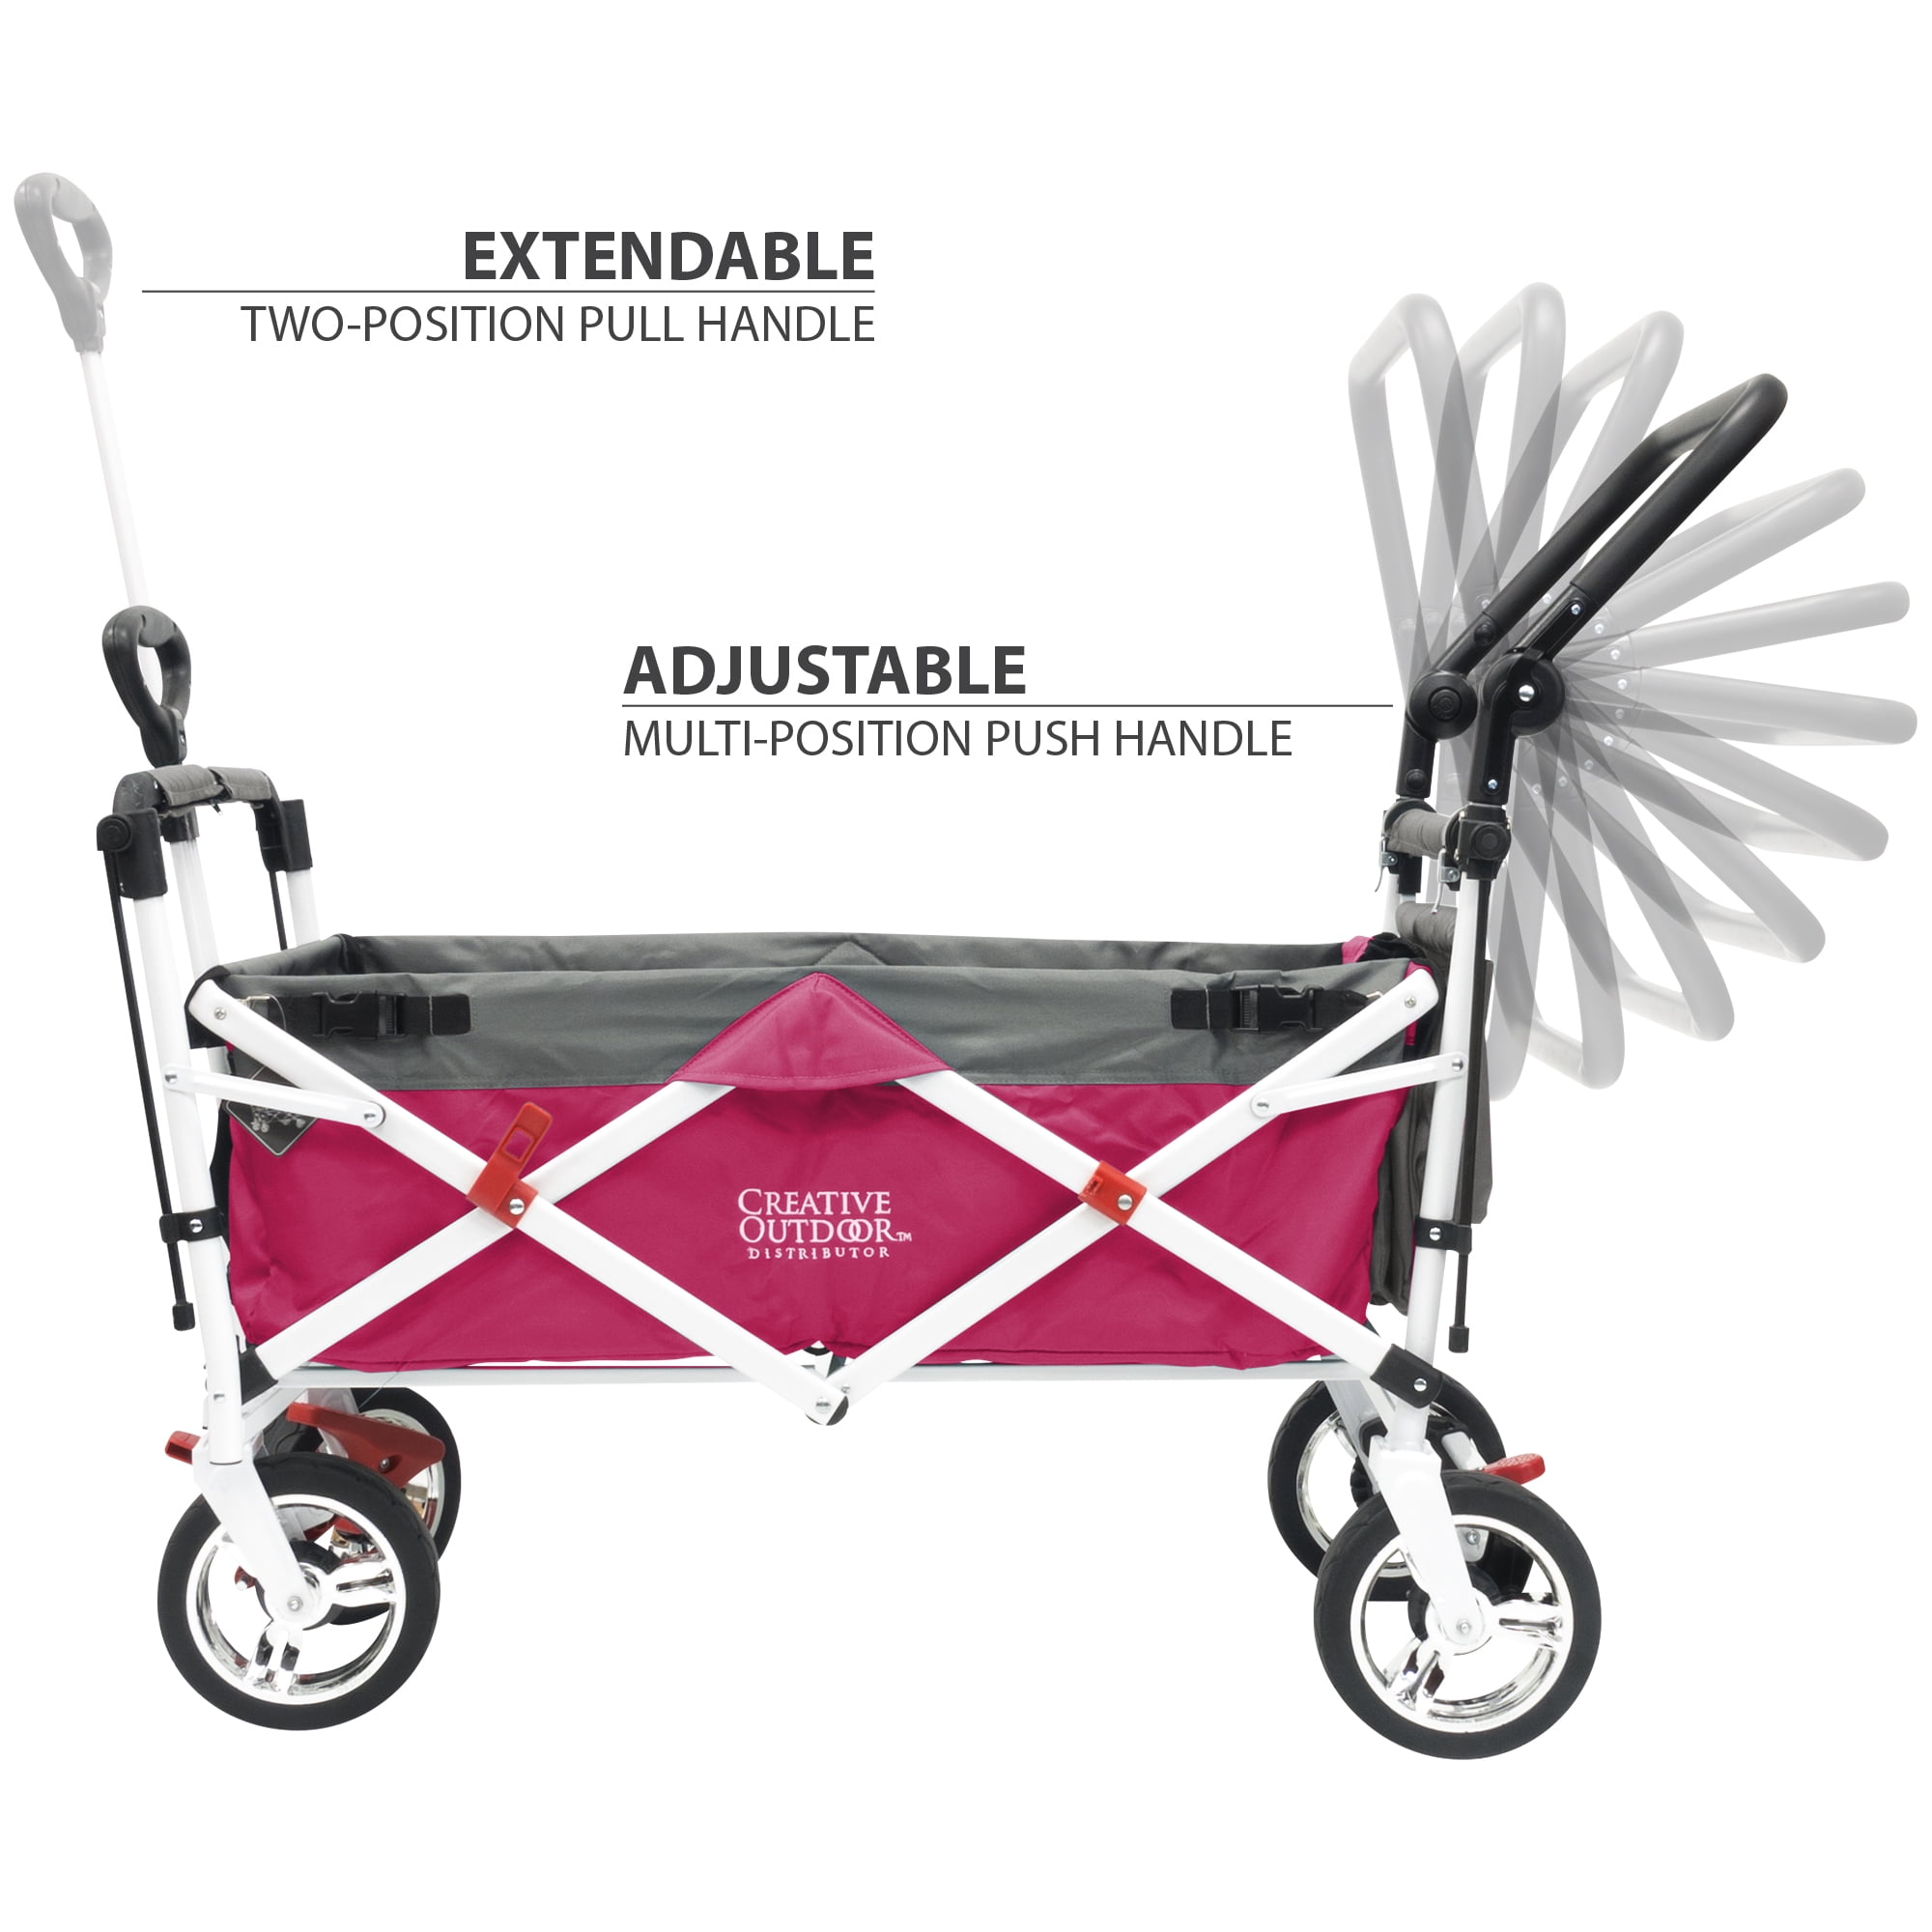 creative outdoor stroller wagon